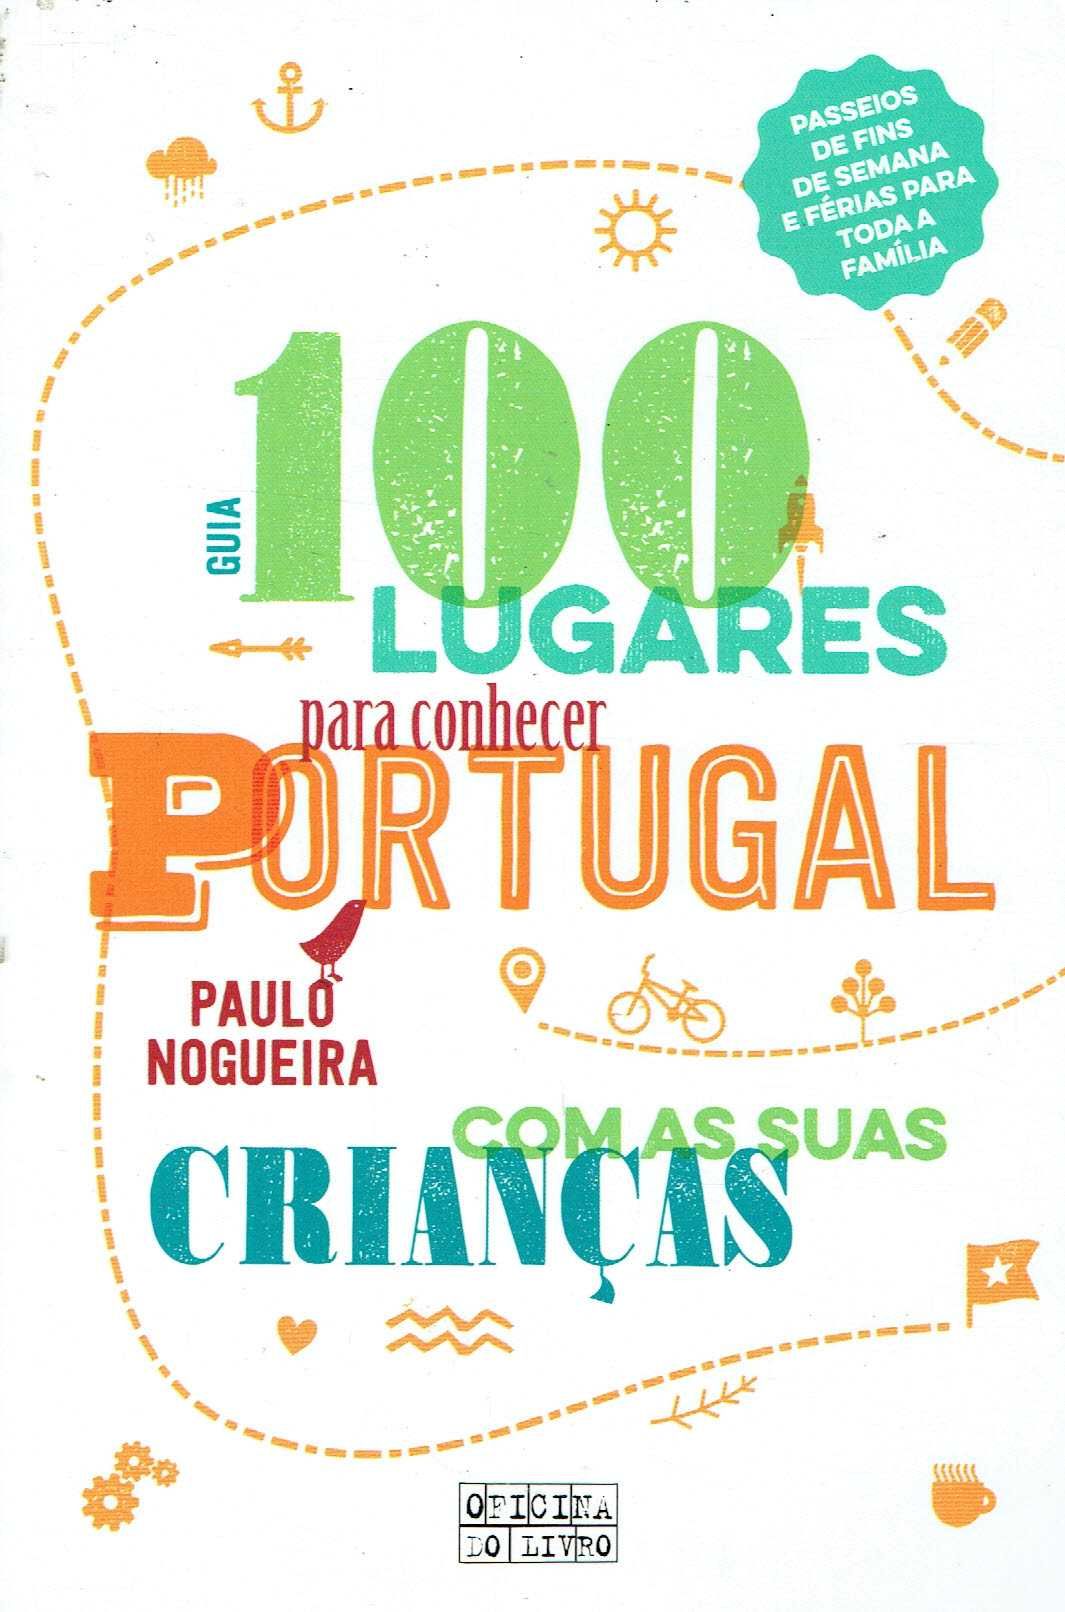 7750
.100 Lugares p Conhecer Portugal com suas crianças